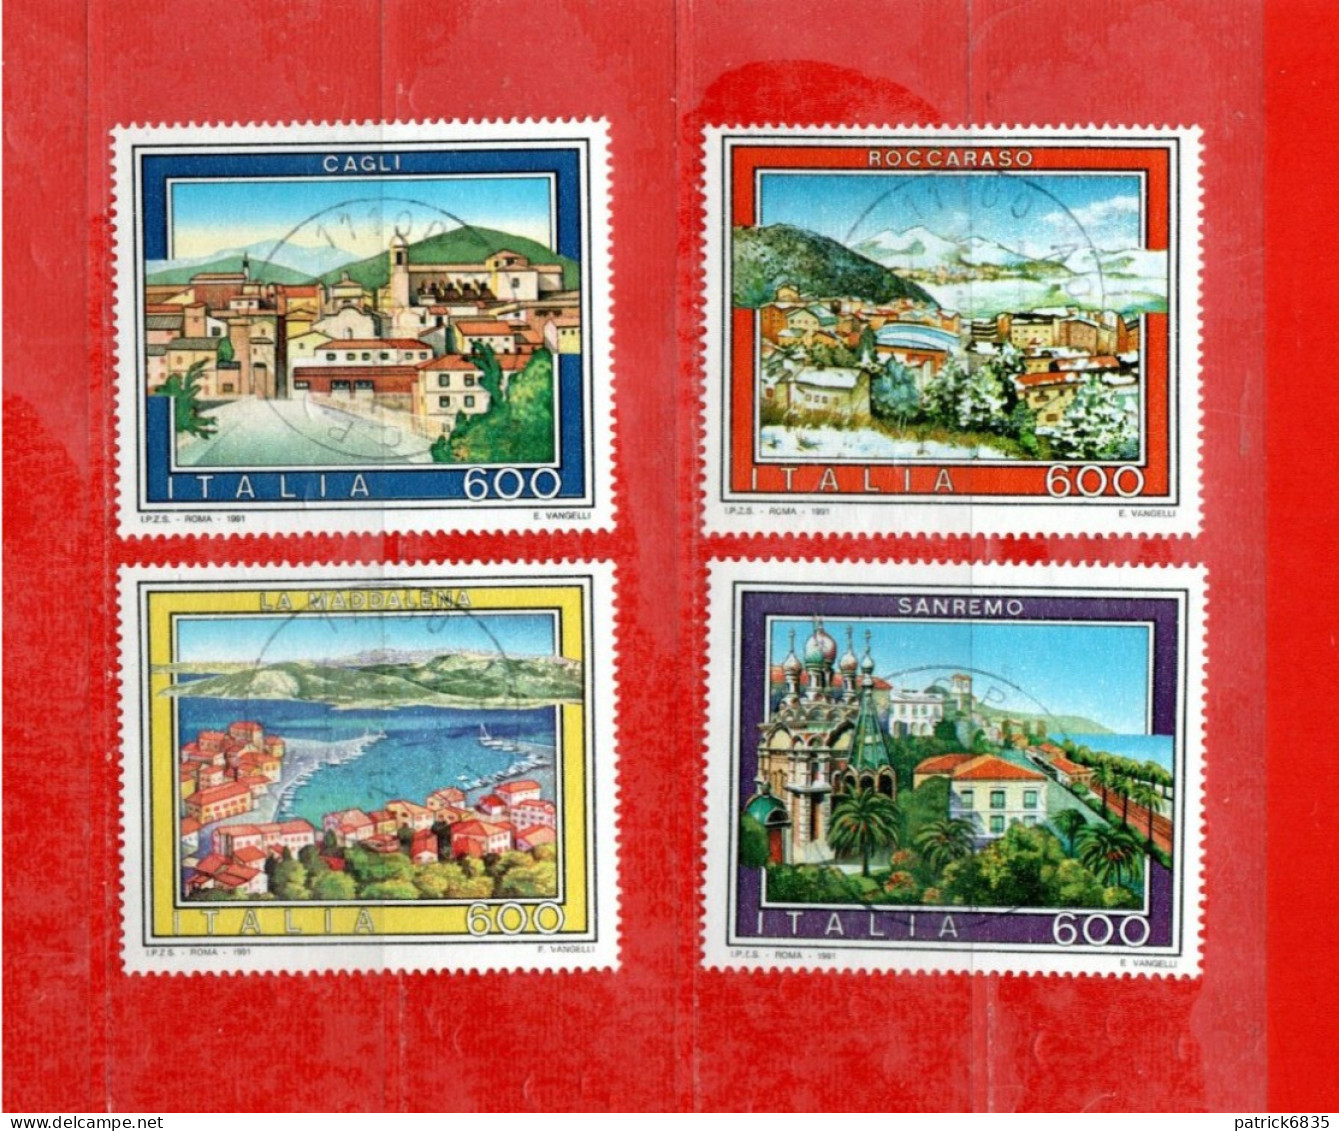 (Fr) Italia ° -1991 - TURISTICA, Sanremo-Cagli-Roccaraso-La Maddalena. Unif. 1972 à 1975.  LUSSO - 1991-00: Oblitérés